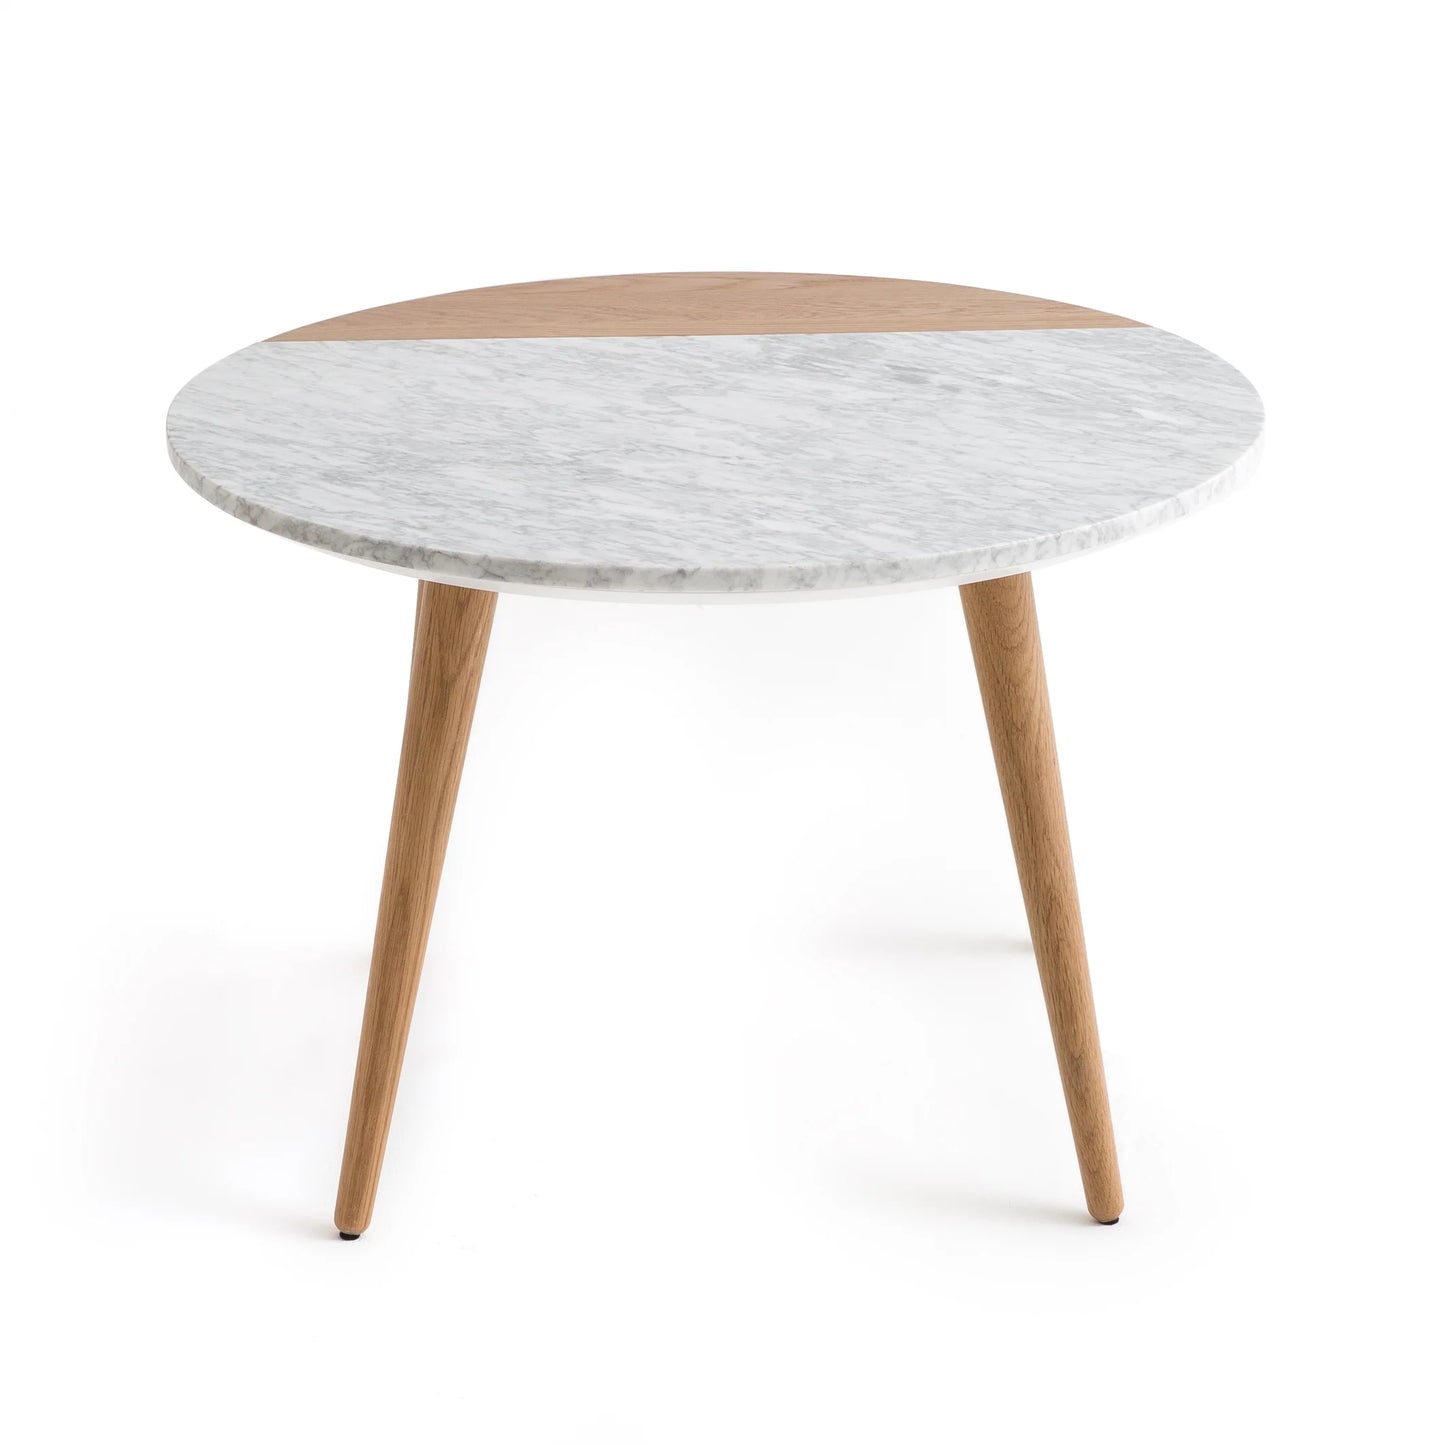 Coffee table 45 x 60 cm - HOS20